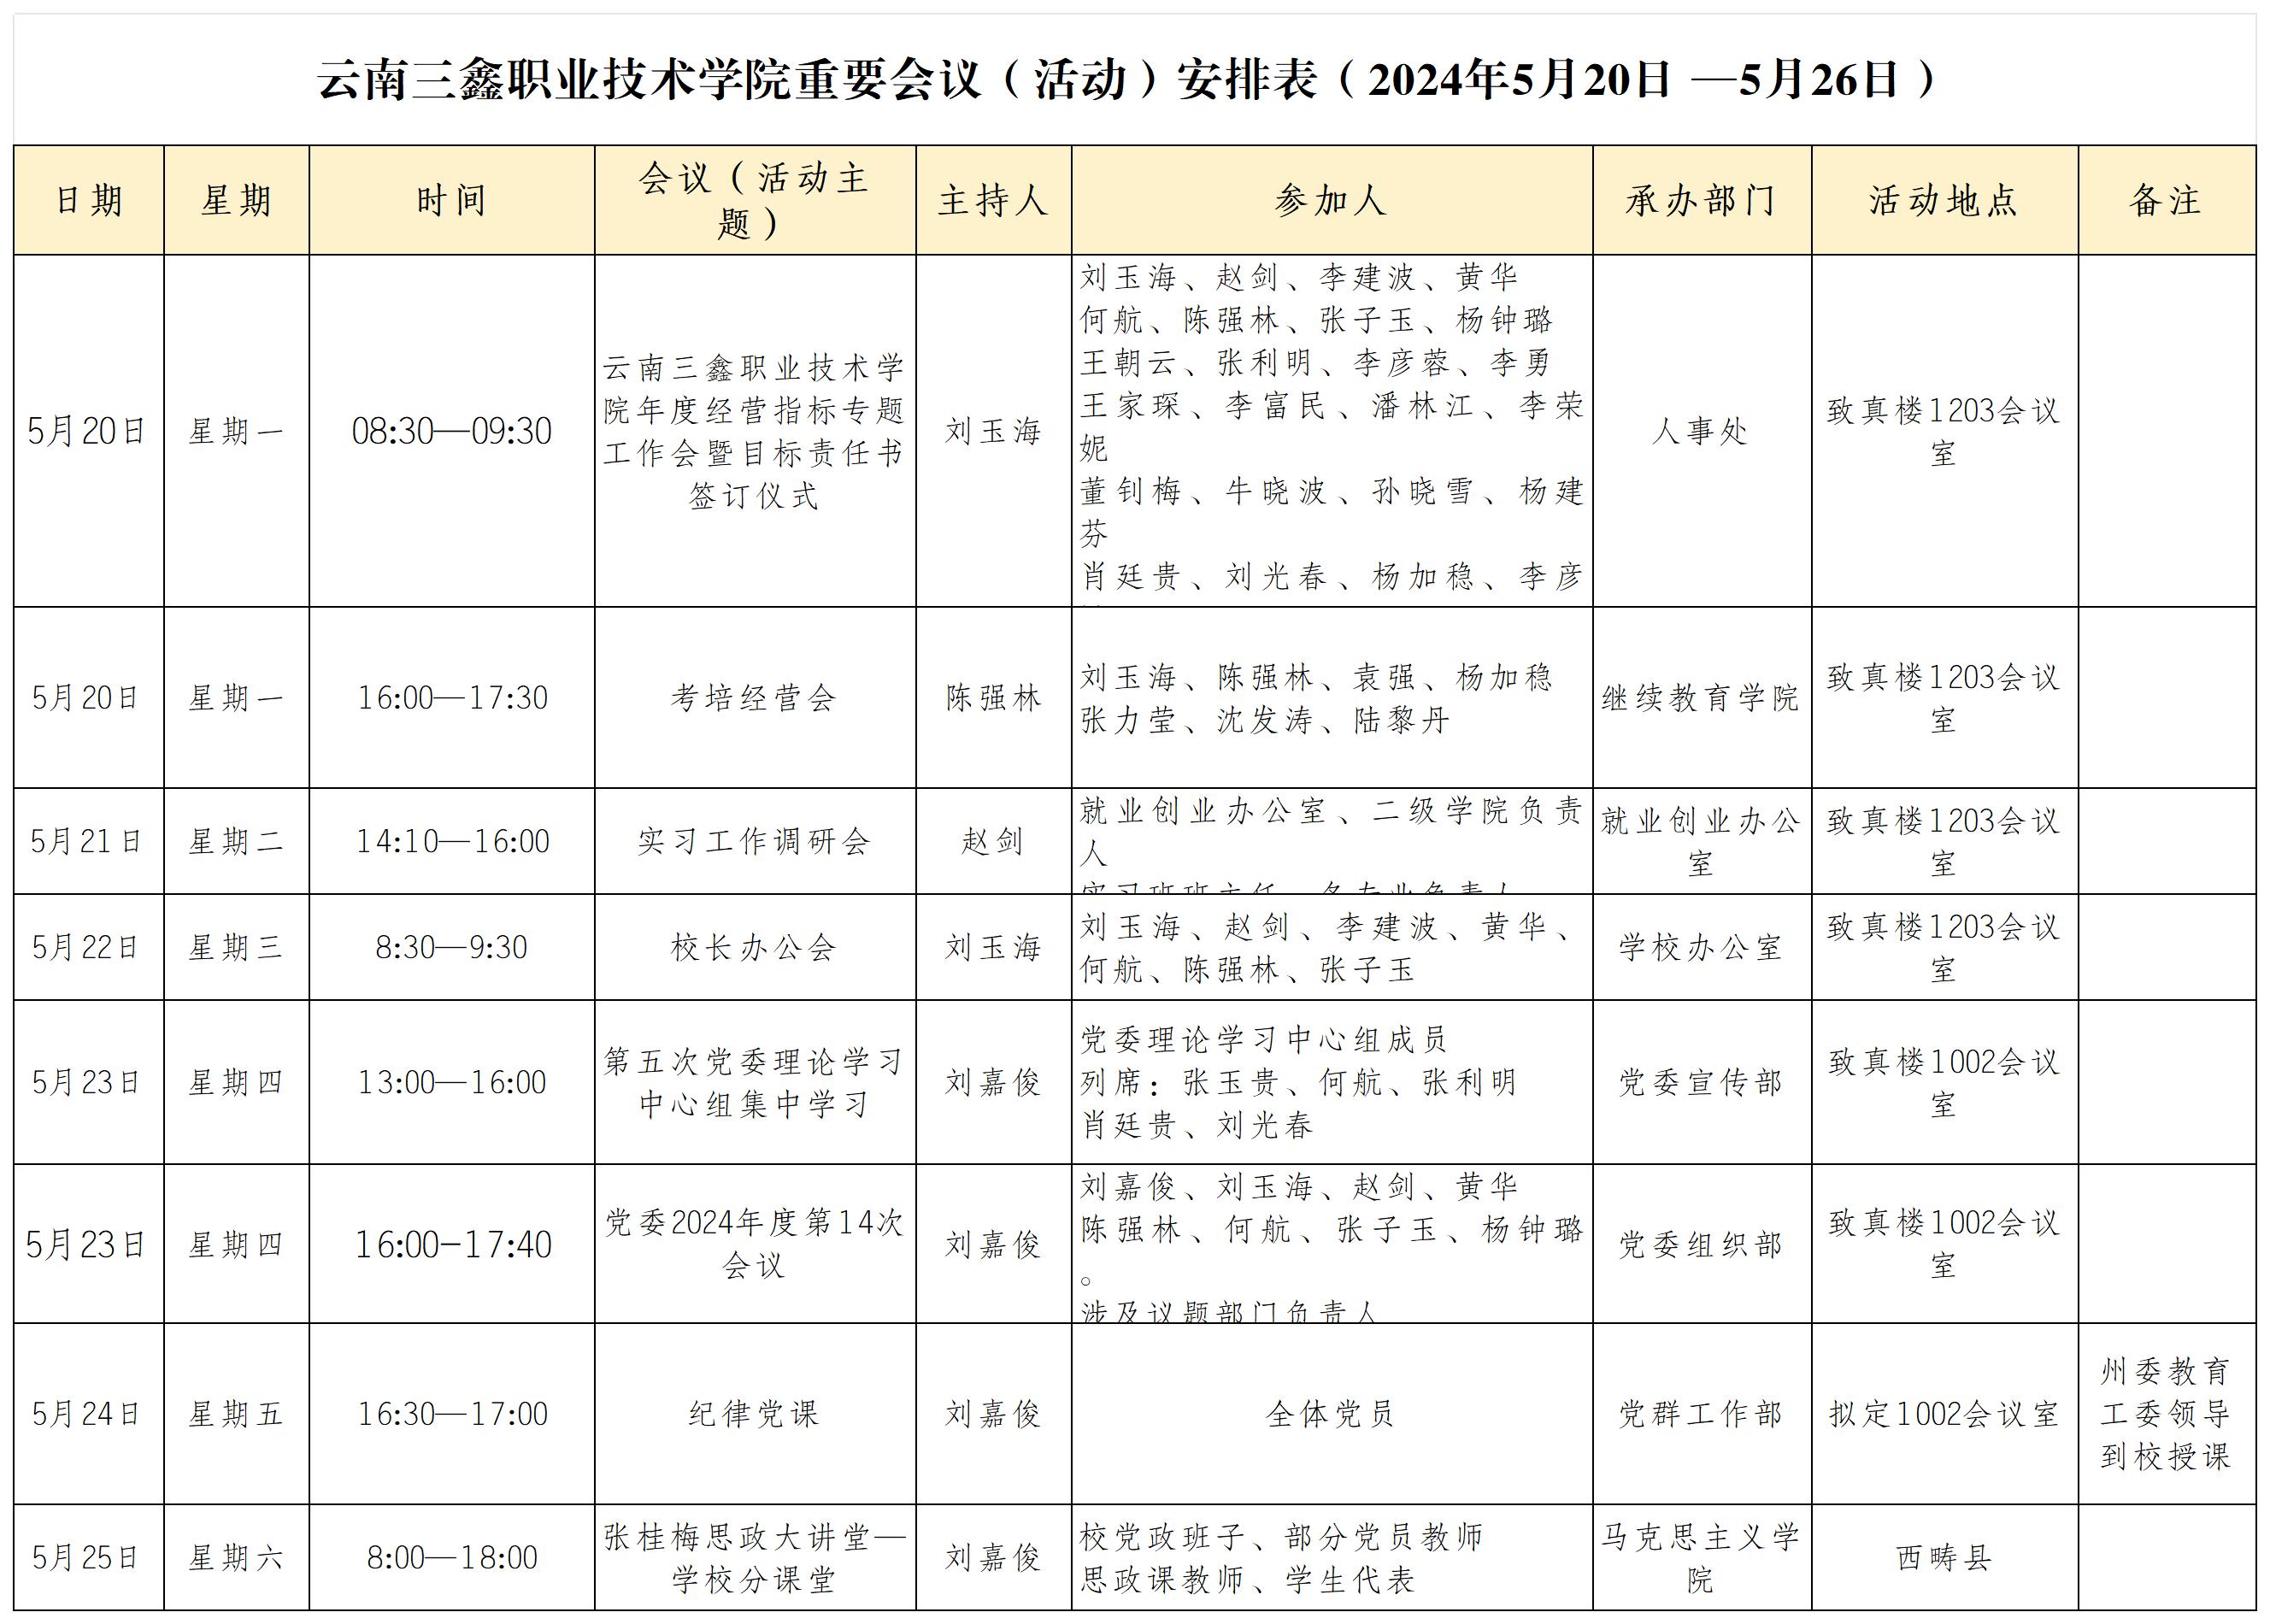 云南三鑫职业技术学院重要会议（活动）安排表（2024年5月20日 —5月26日）